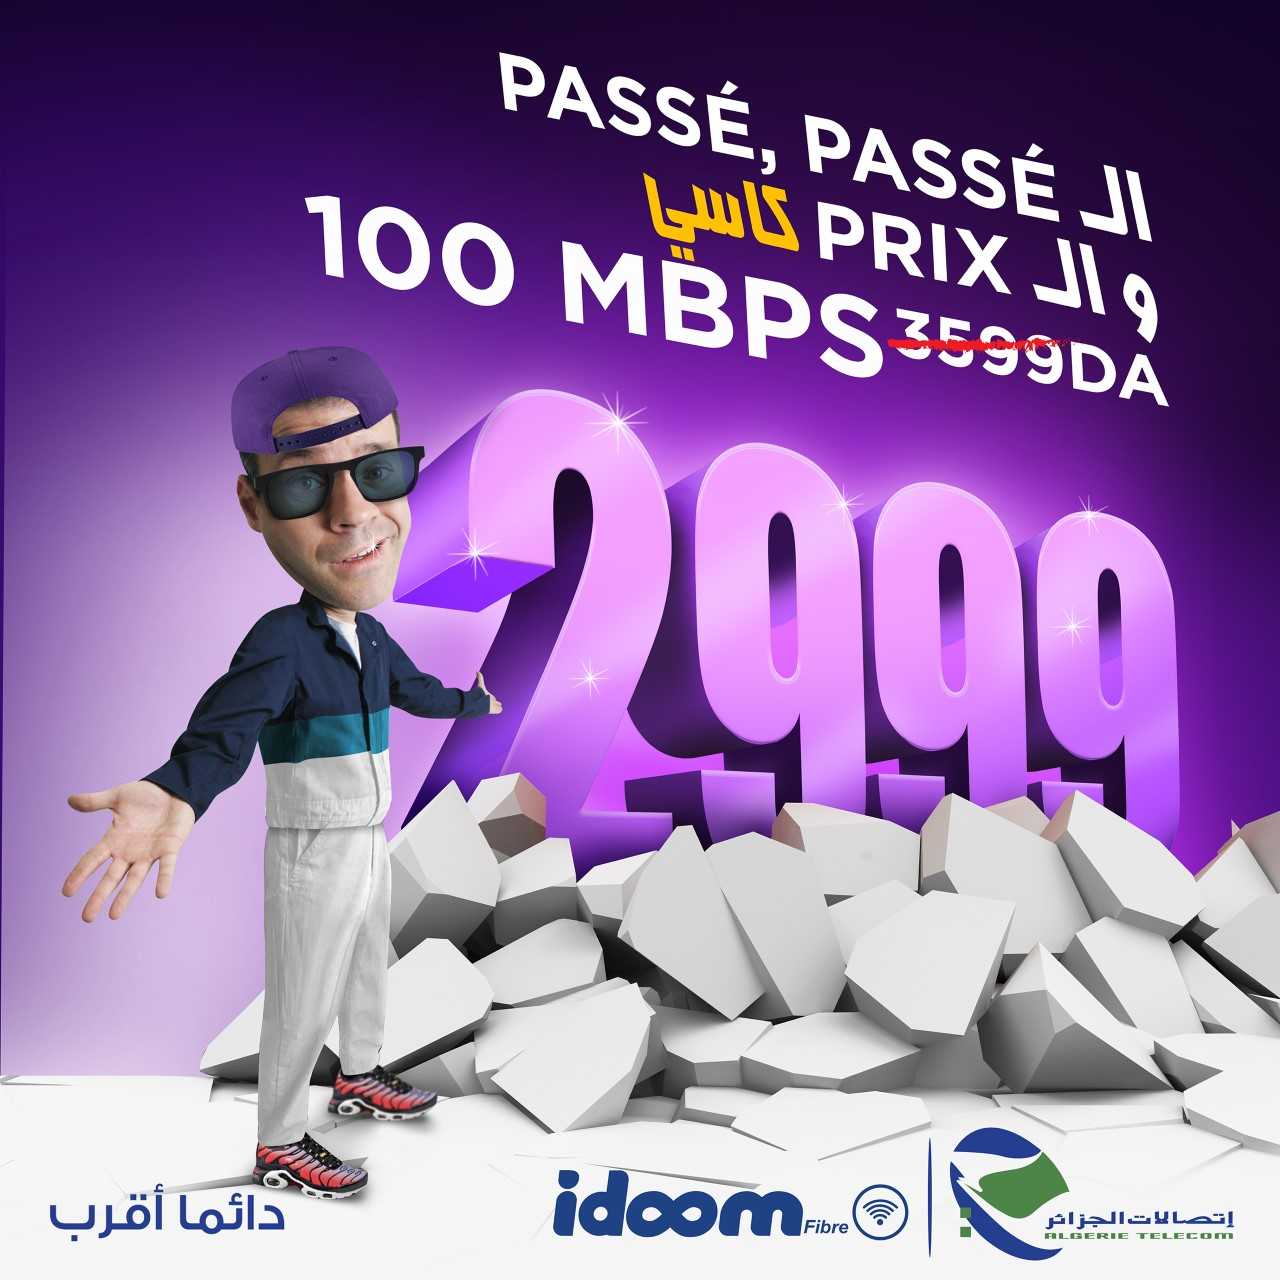 Idoom Fibre : Algeria Telecom introduces a new offer